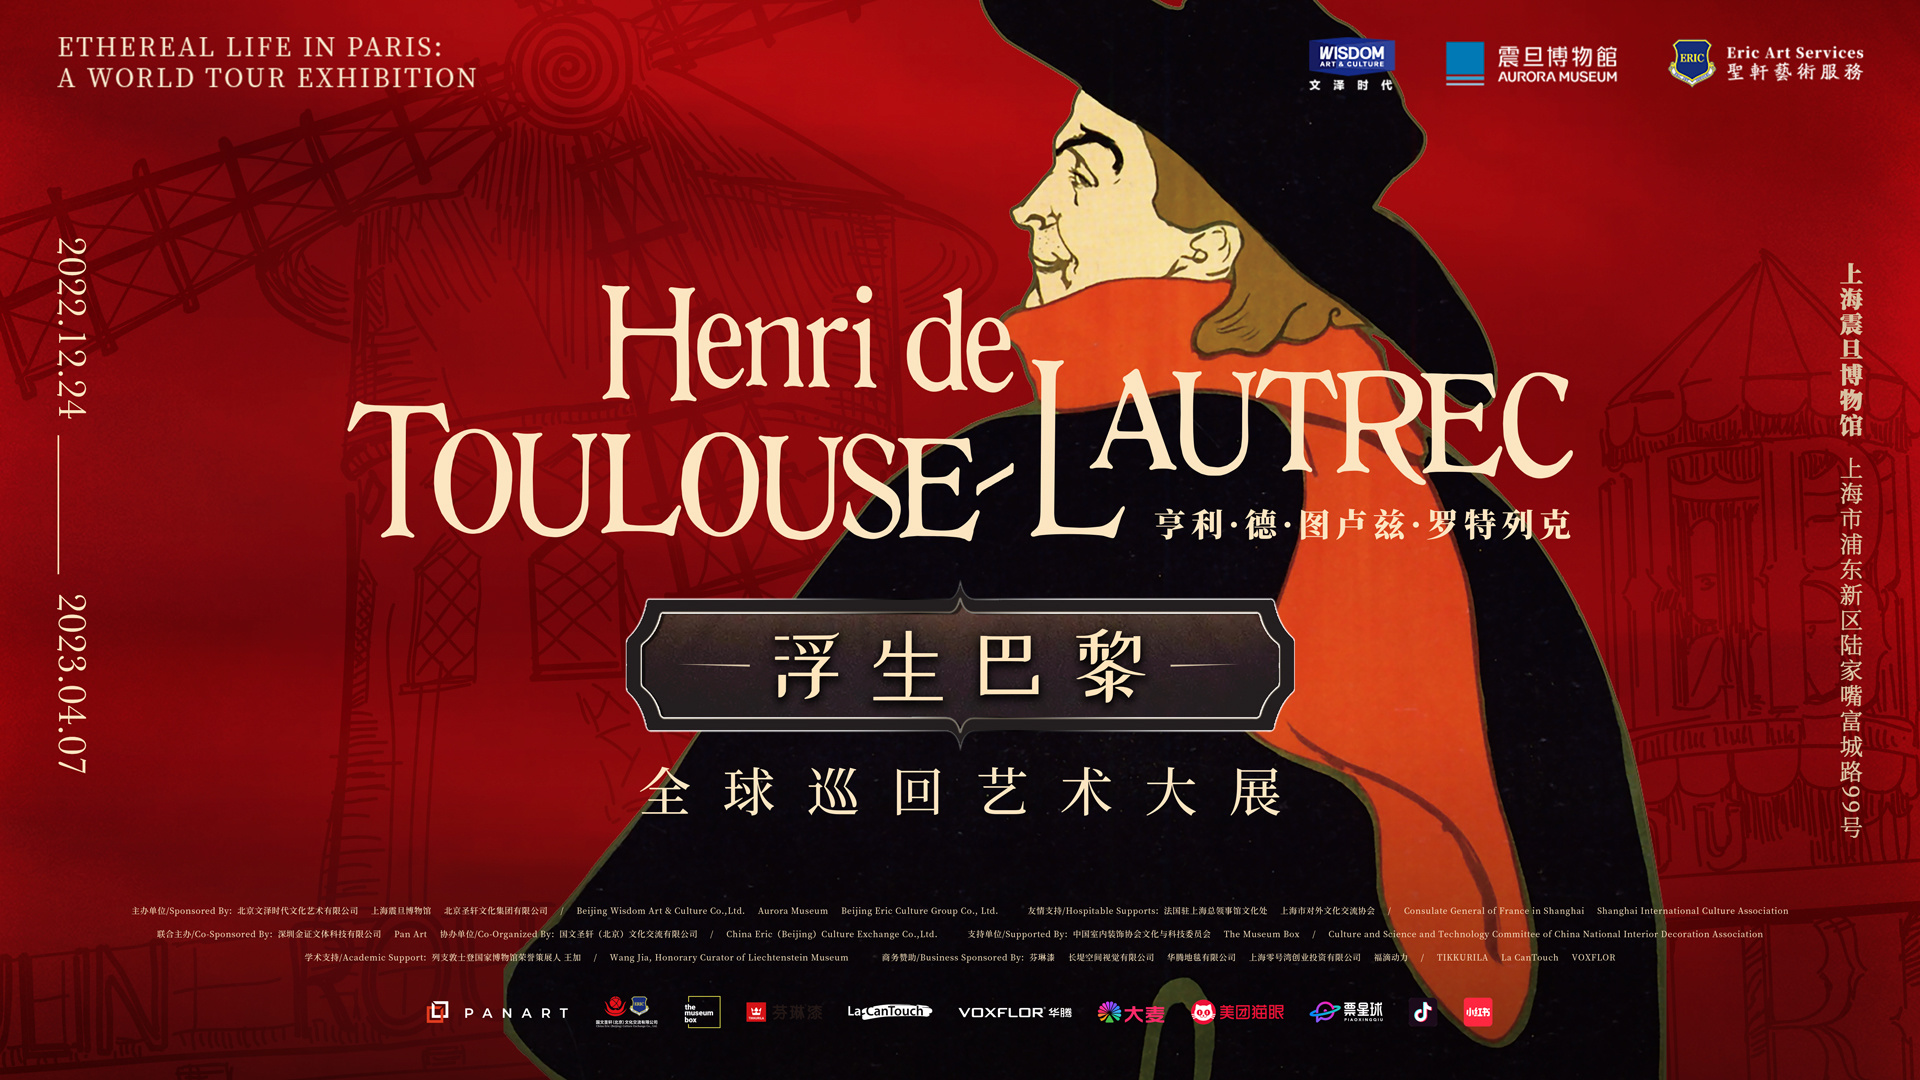 墙报报道丨《浮生巴黎—亨利•德•图卢兹-罗特列克全球巡回艺术大展》 中国首展即将登陆上海